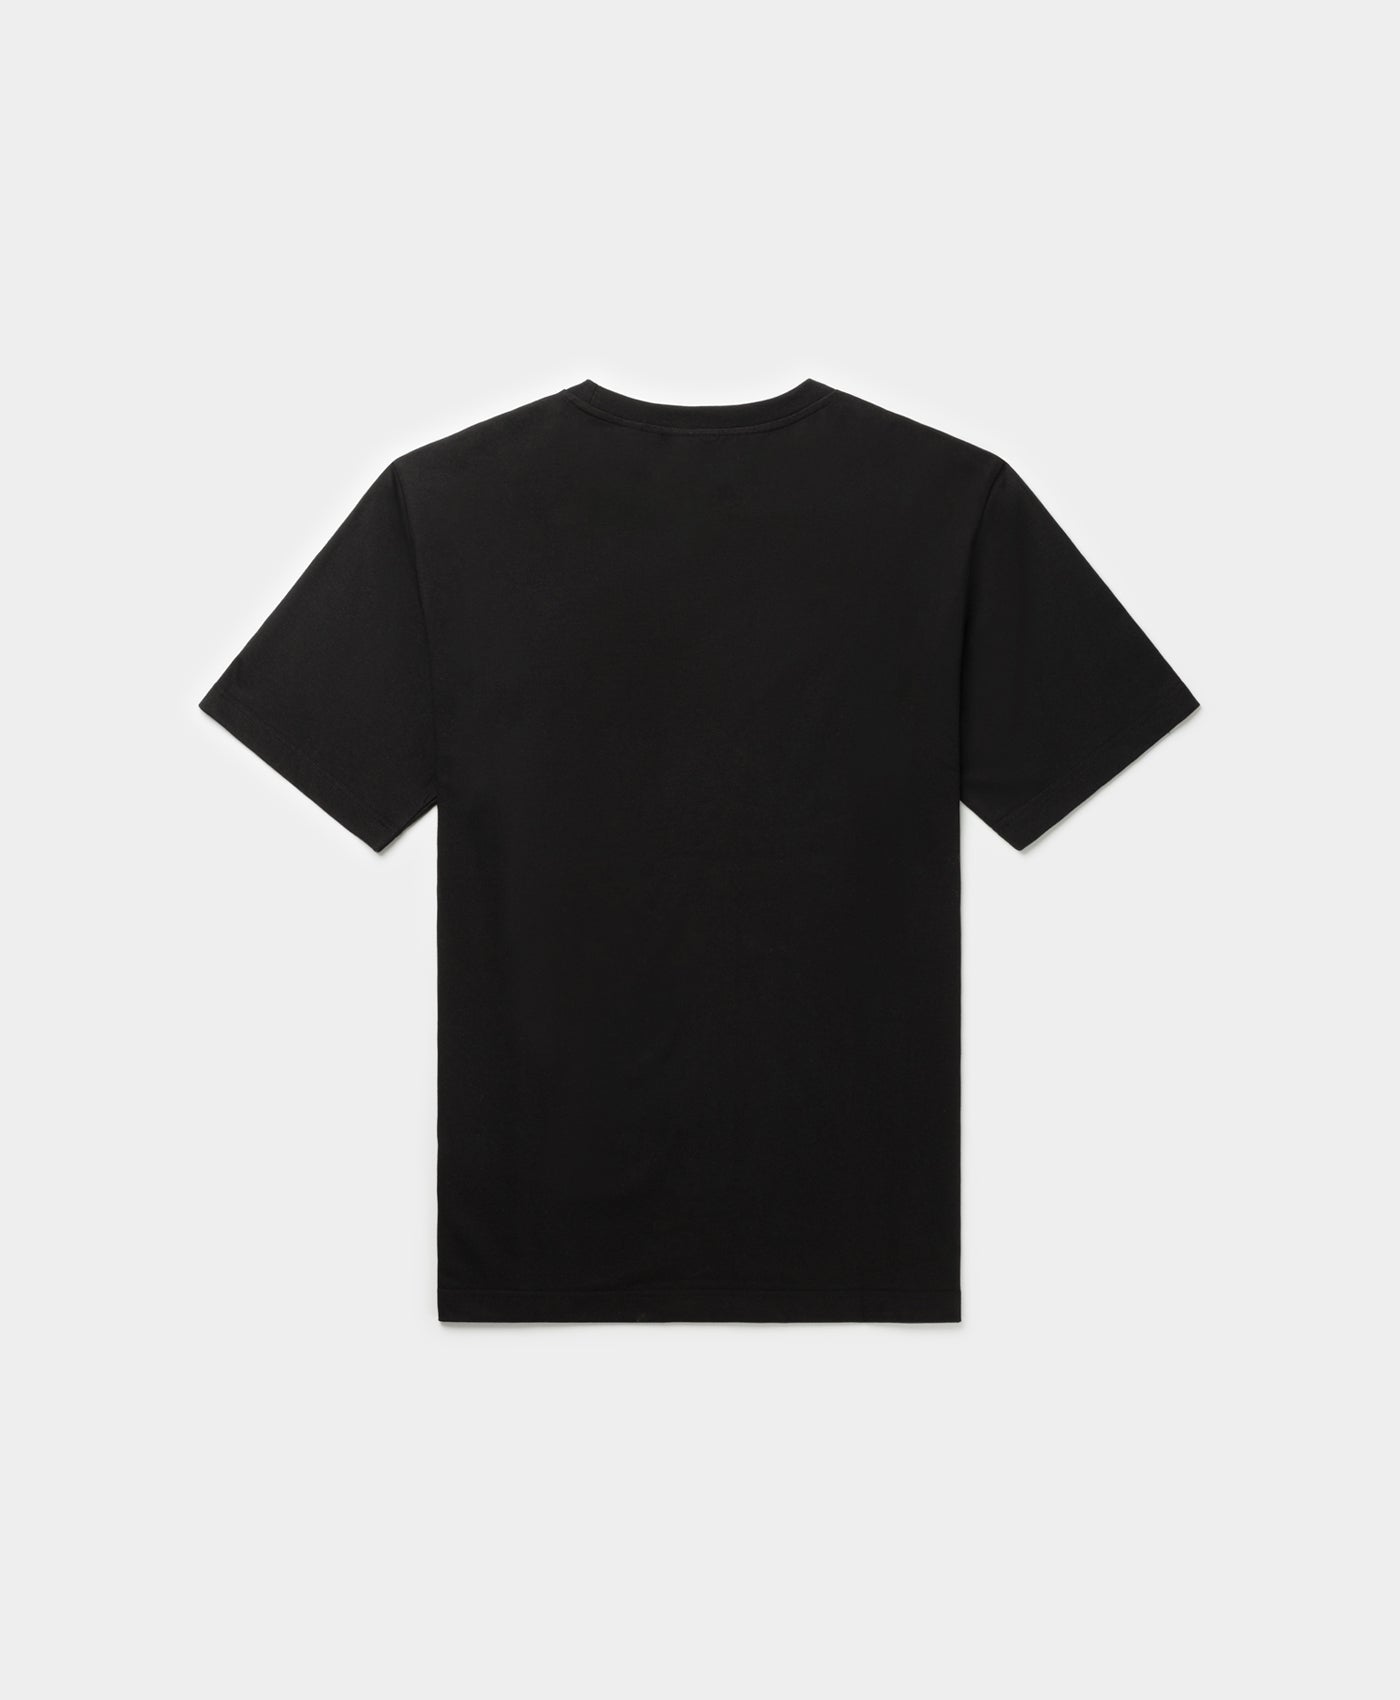 DP - Black Rafat T-Shirt - Packshot - Rear